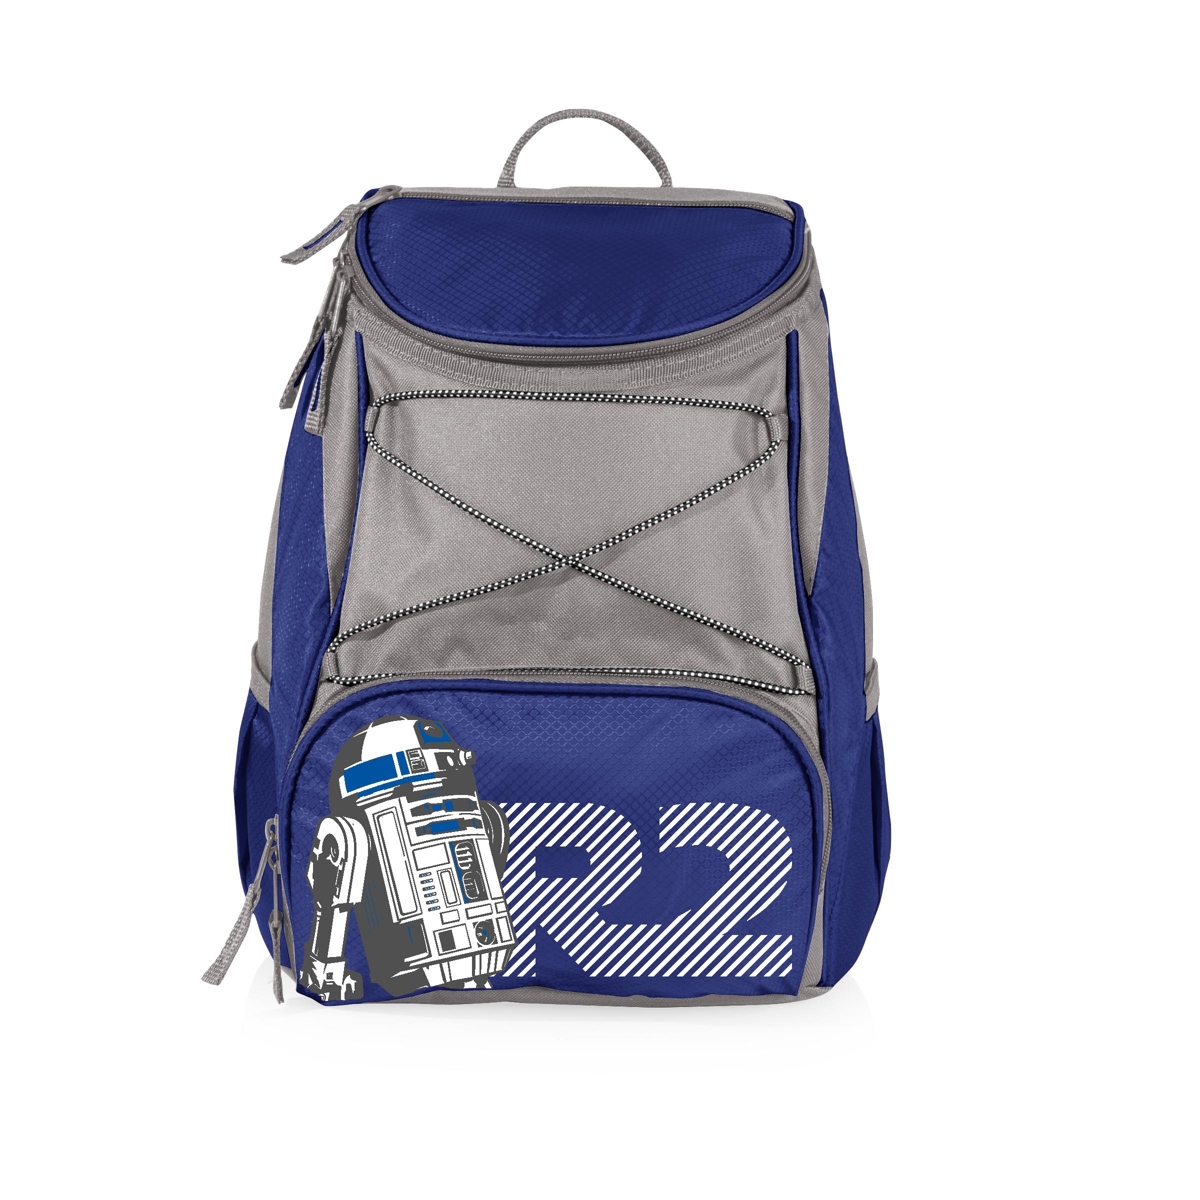 R2-D2 - Ptx Cooler Backpack - Navy